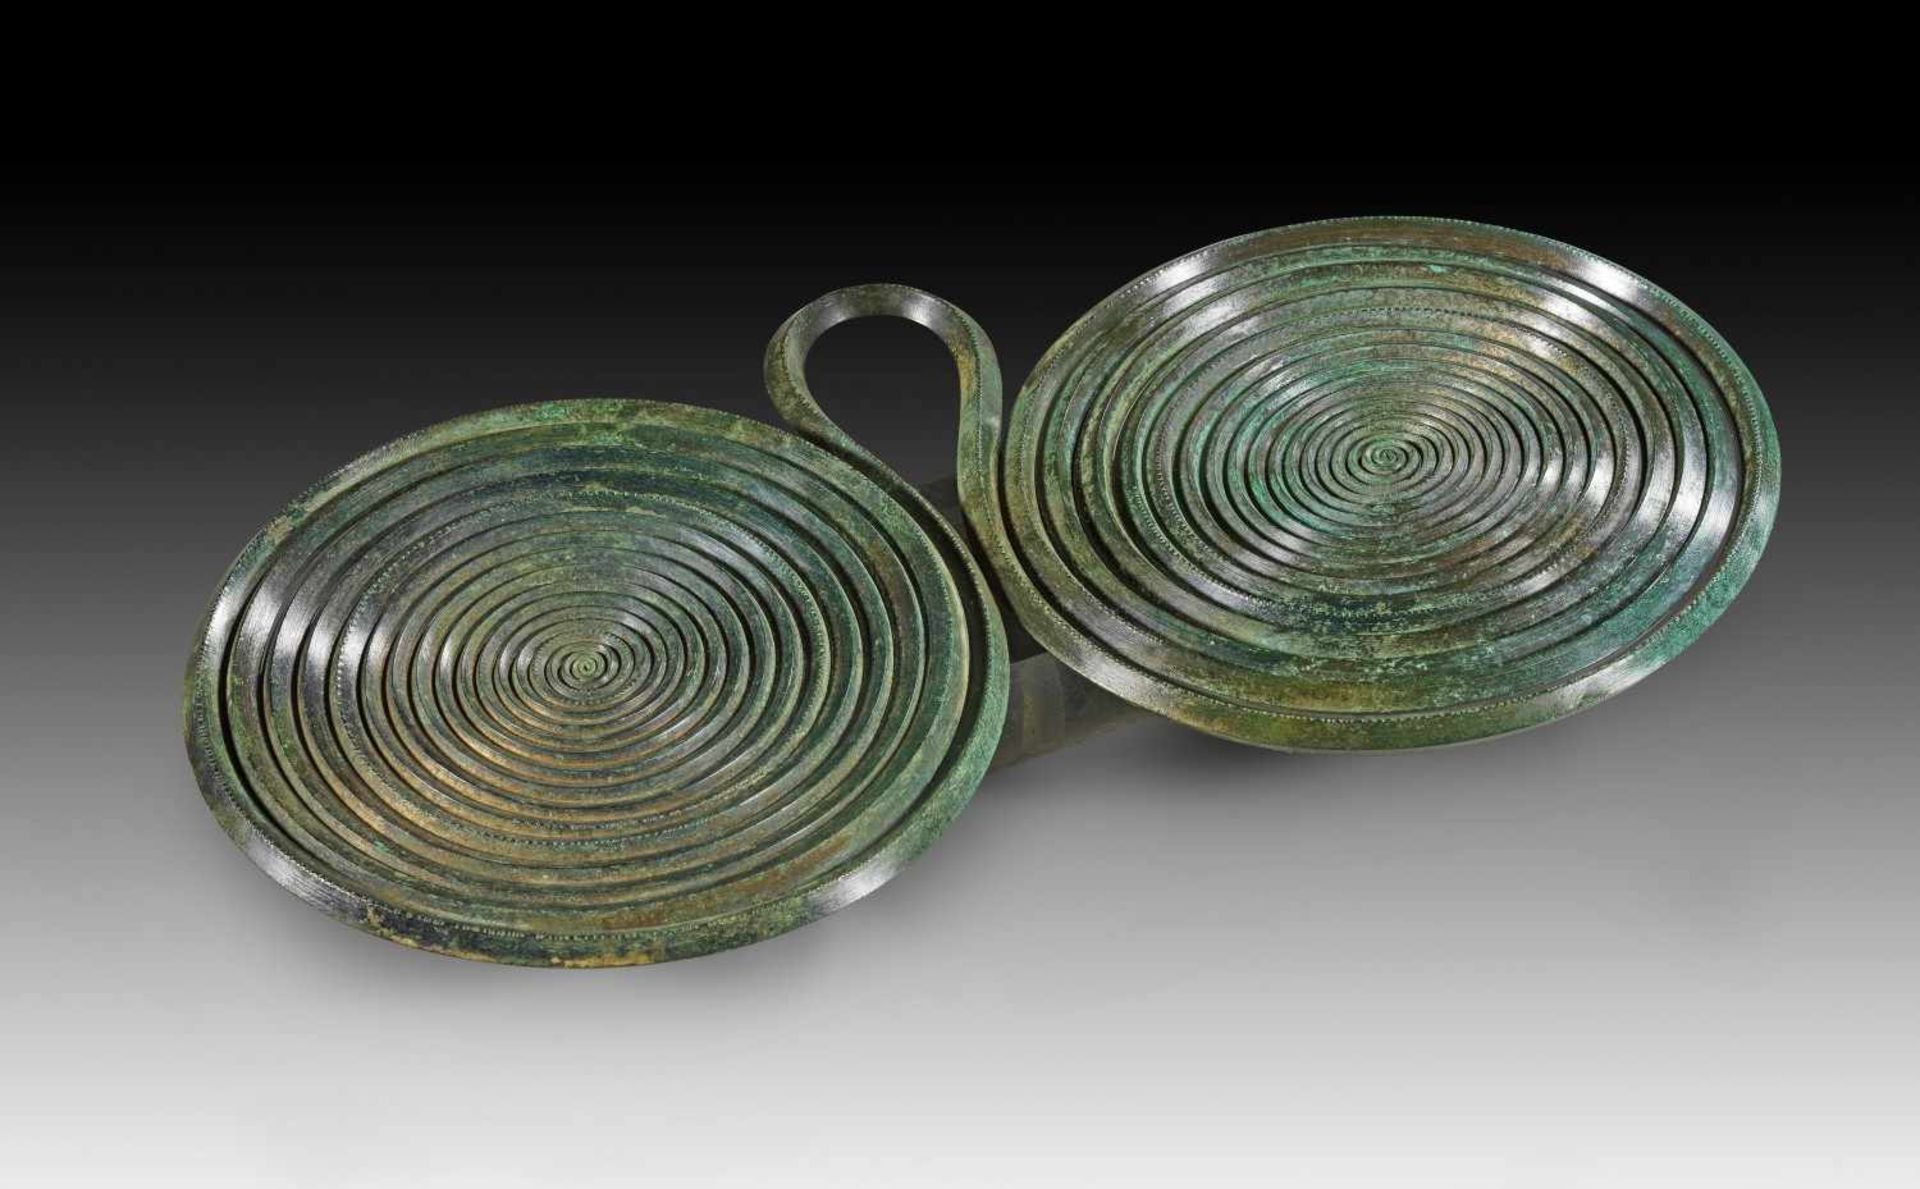 Großer Brillenanhänger. Späte Bronzezeit, 1300 - 800 v. Chr. B 22,5cm, ø der Spiralen ca. 11,5cm.